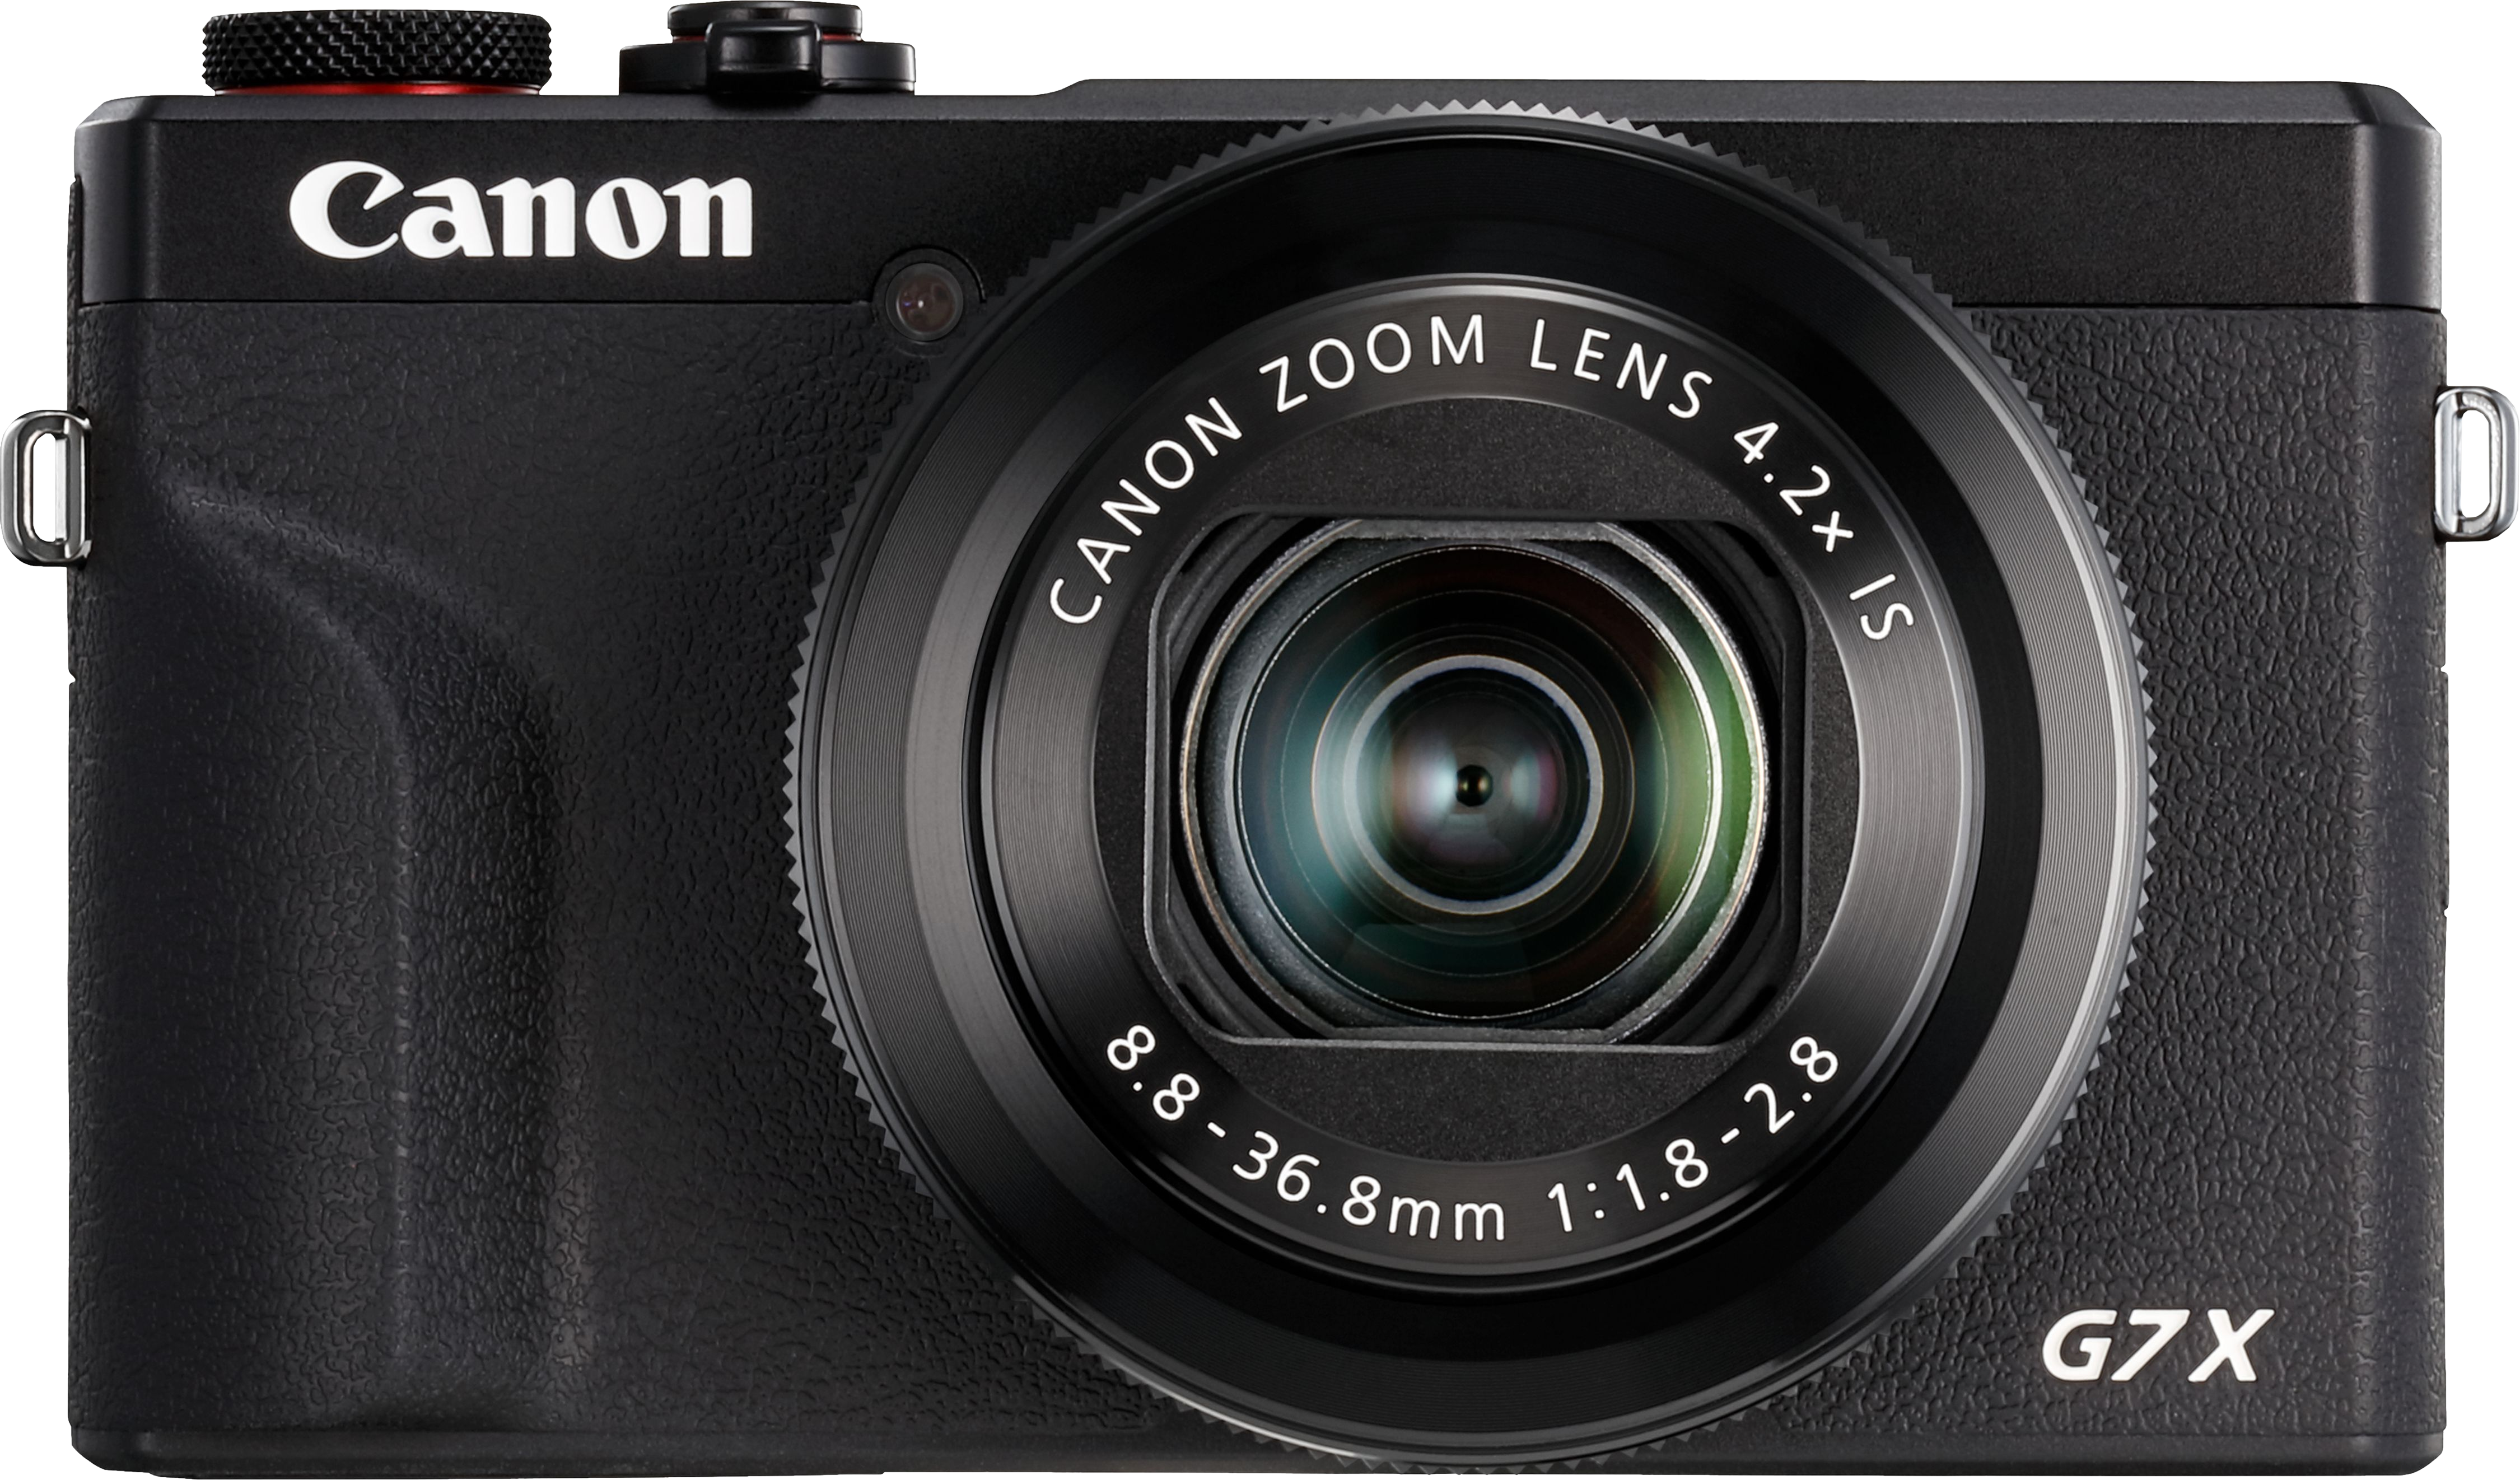 CANON PowerShot G7 X Mark III - Fotocamera compatta Nero